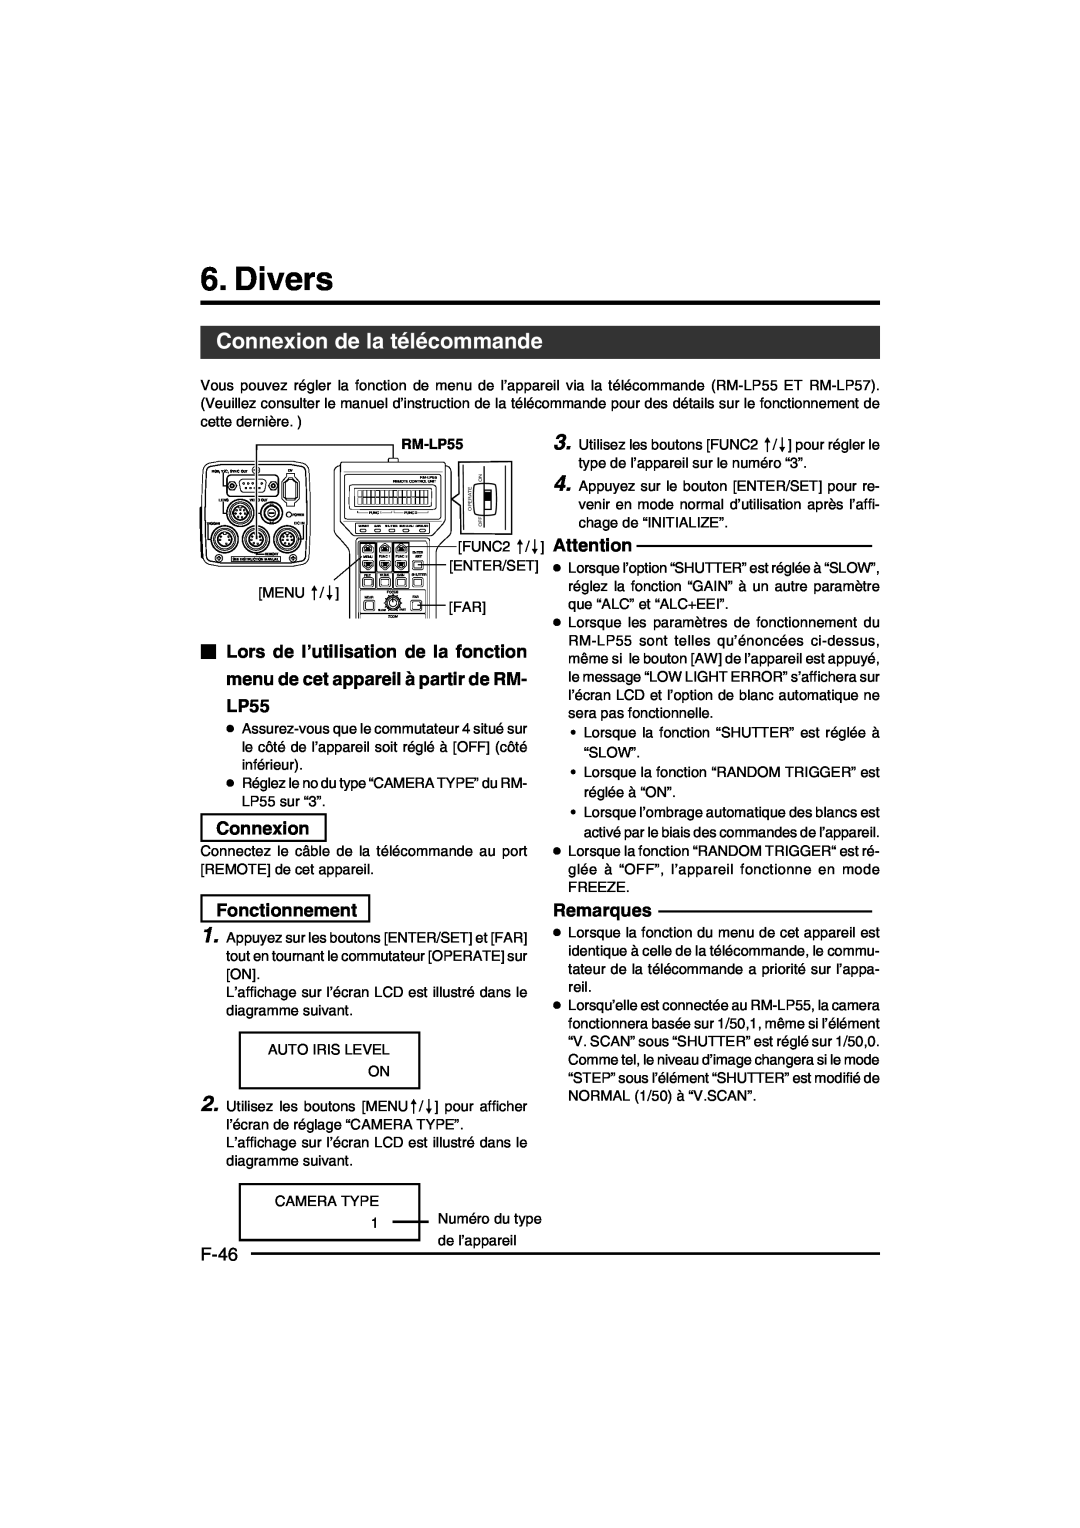 JVC KY-F550E instruction manual Divers, Connexion de la télécommande, Fonctionnement, F-46, Remarques, RM-LP55 